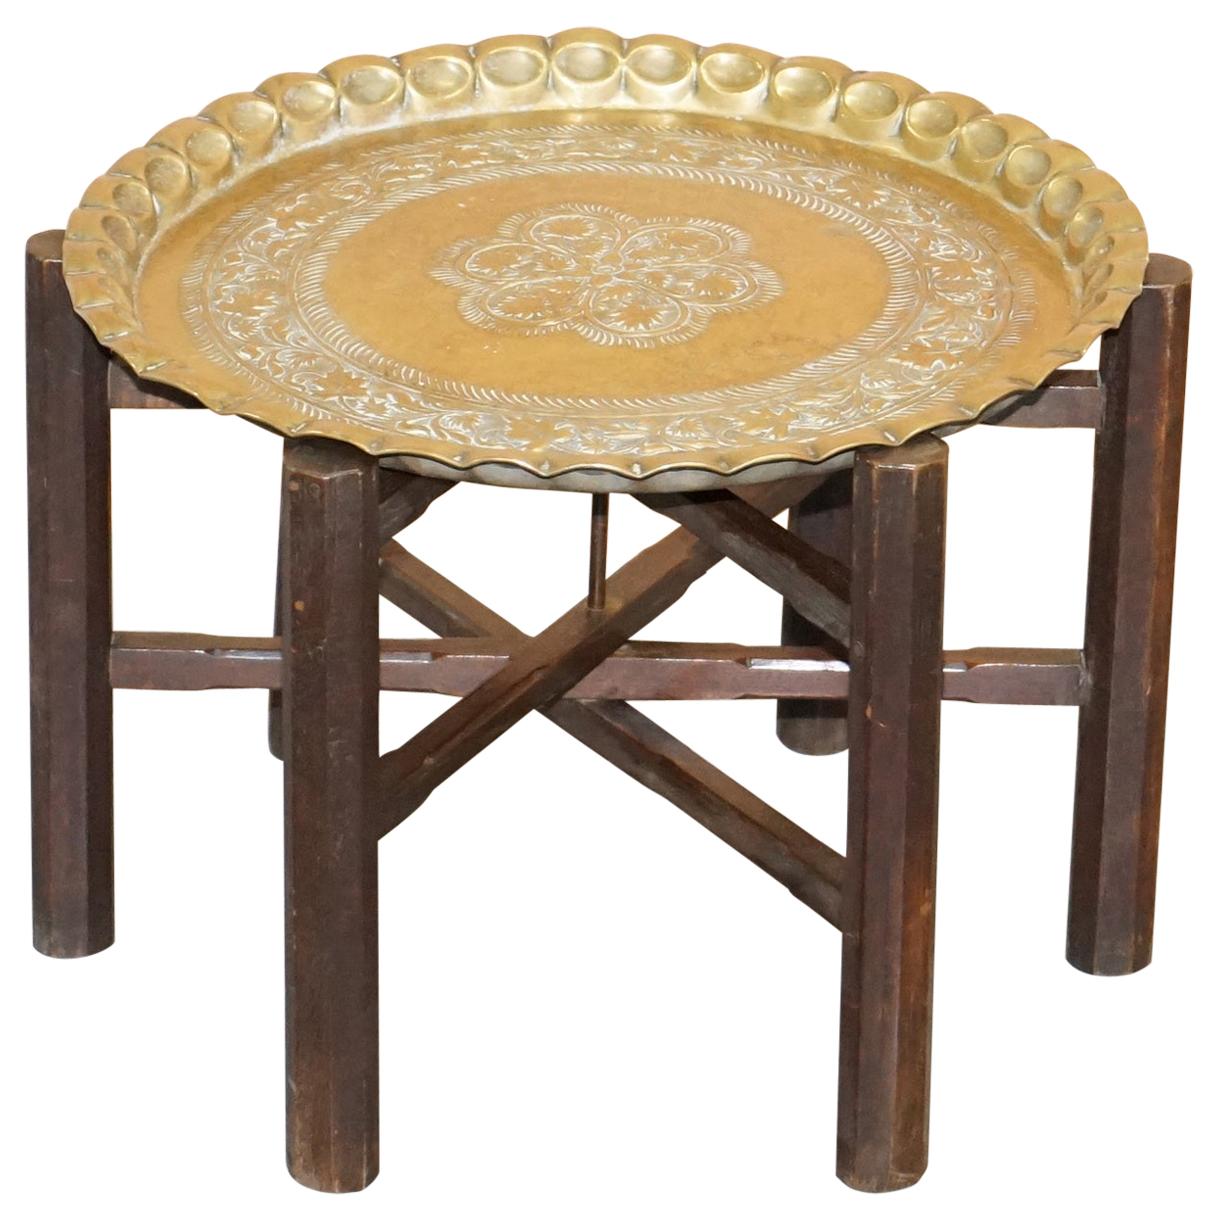 Très rare table d'appoint pliante en laiton d'origine marocaine:: datant des années 1920-1940